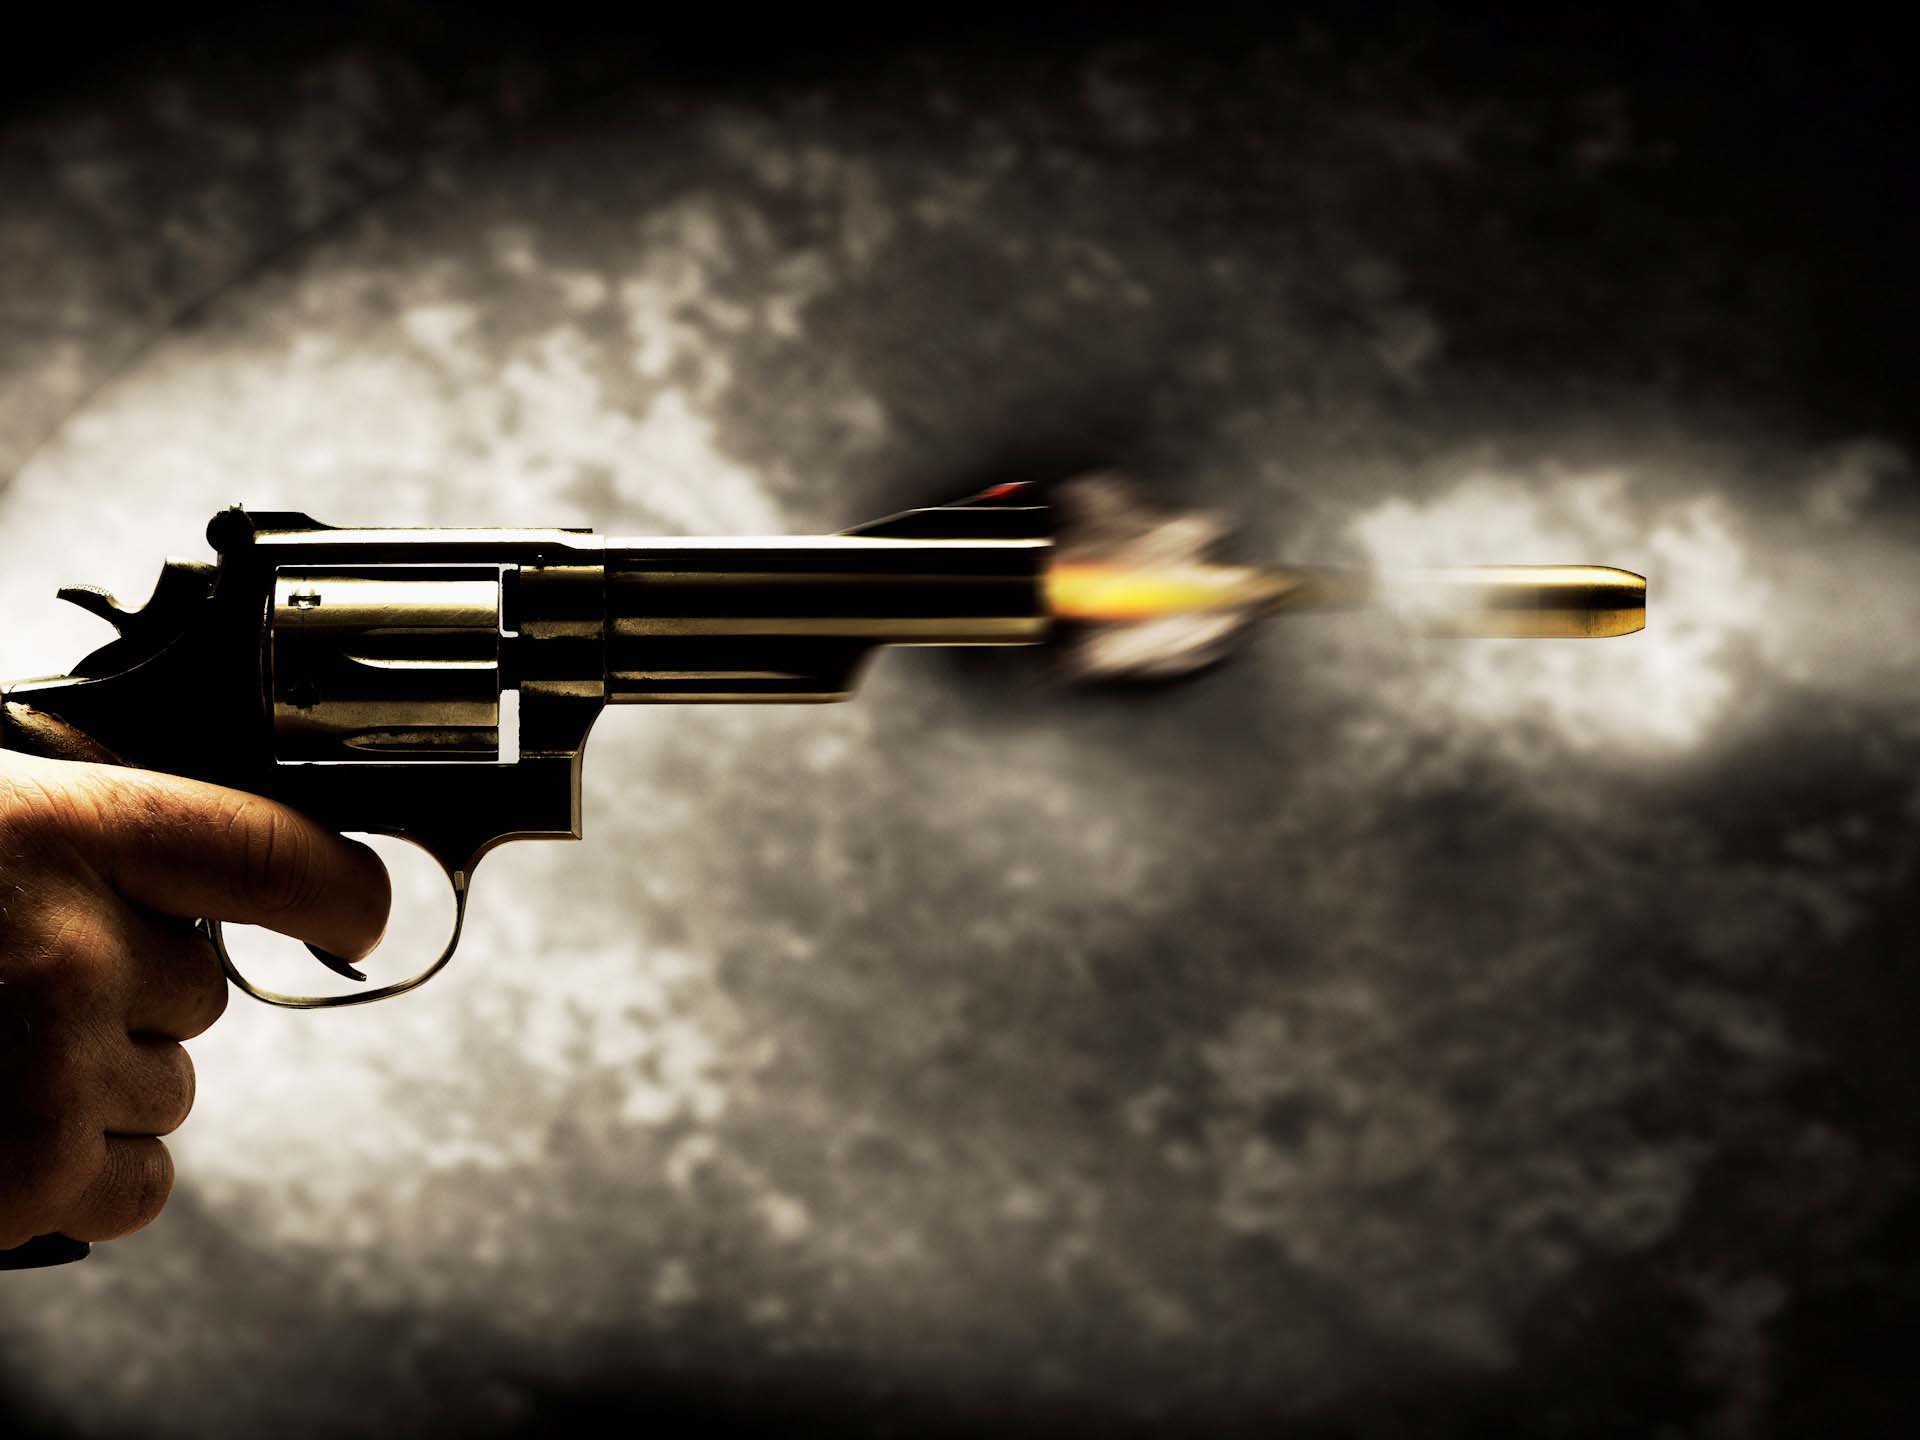 Speeding Bullet Shot from Revolver bxp137715h